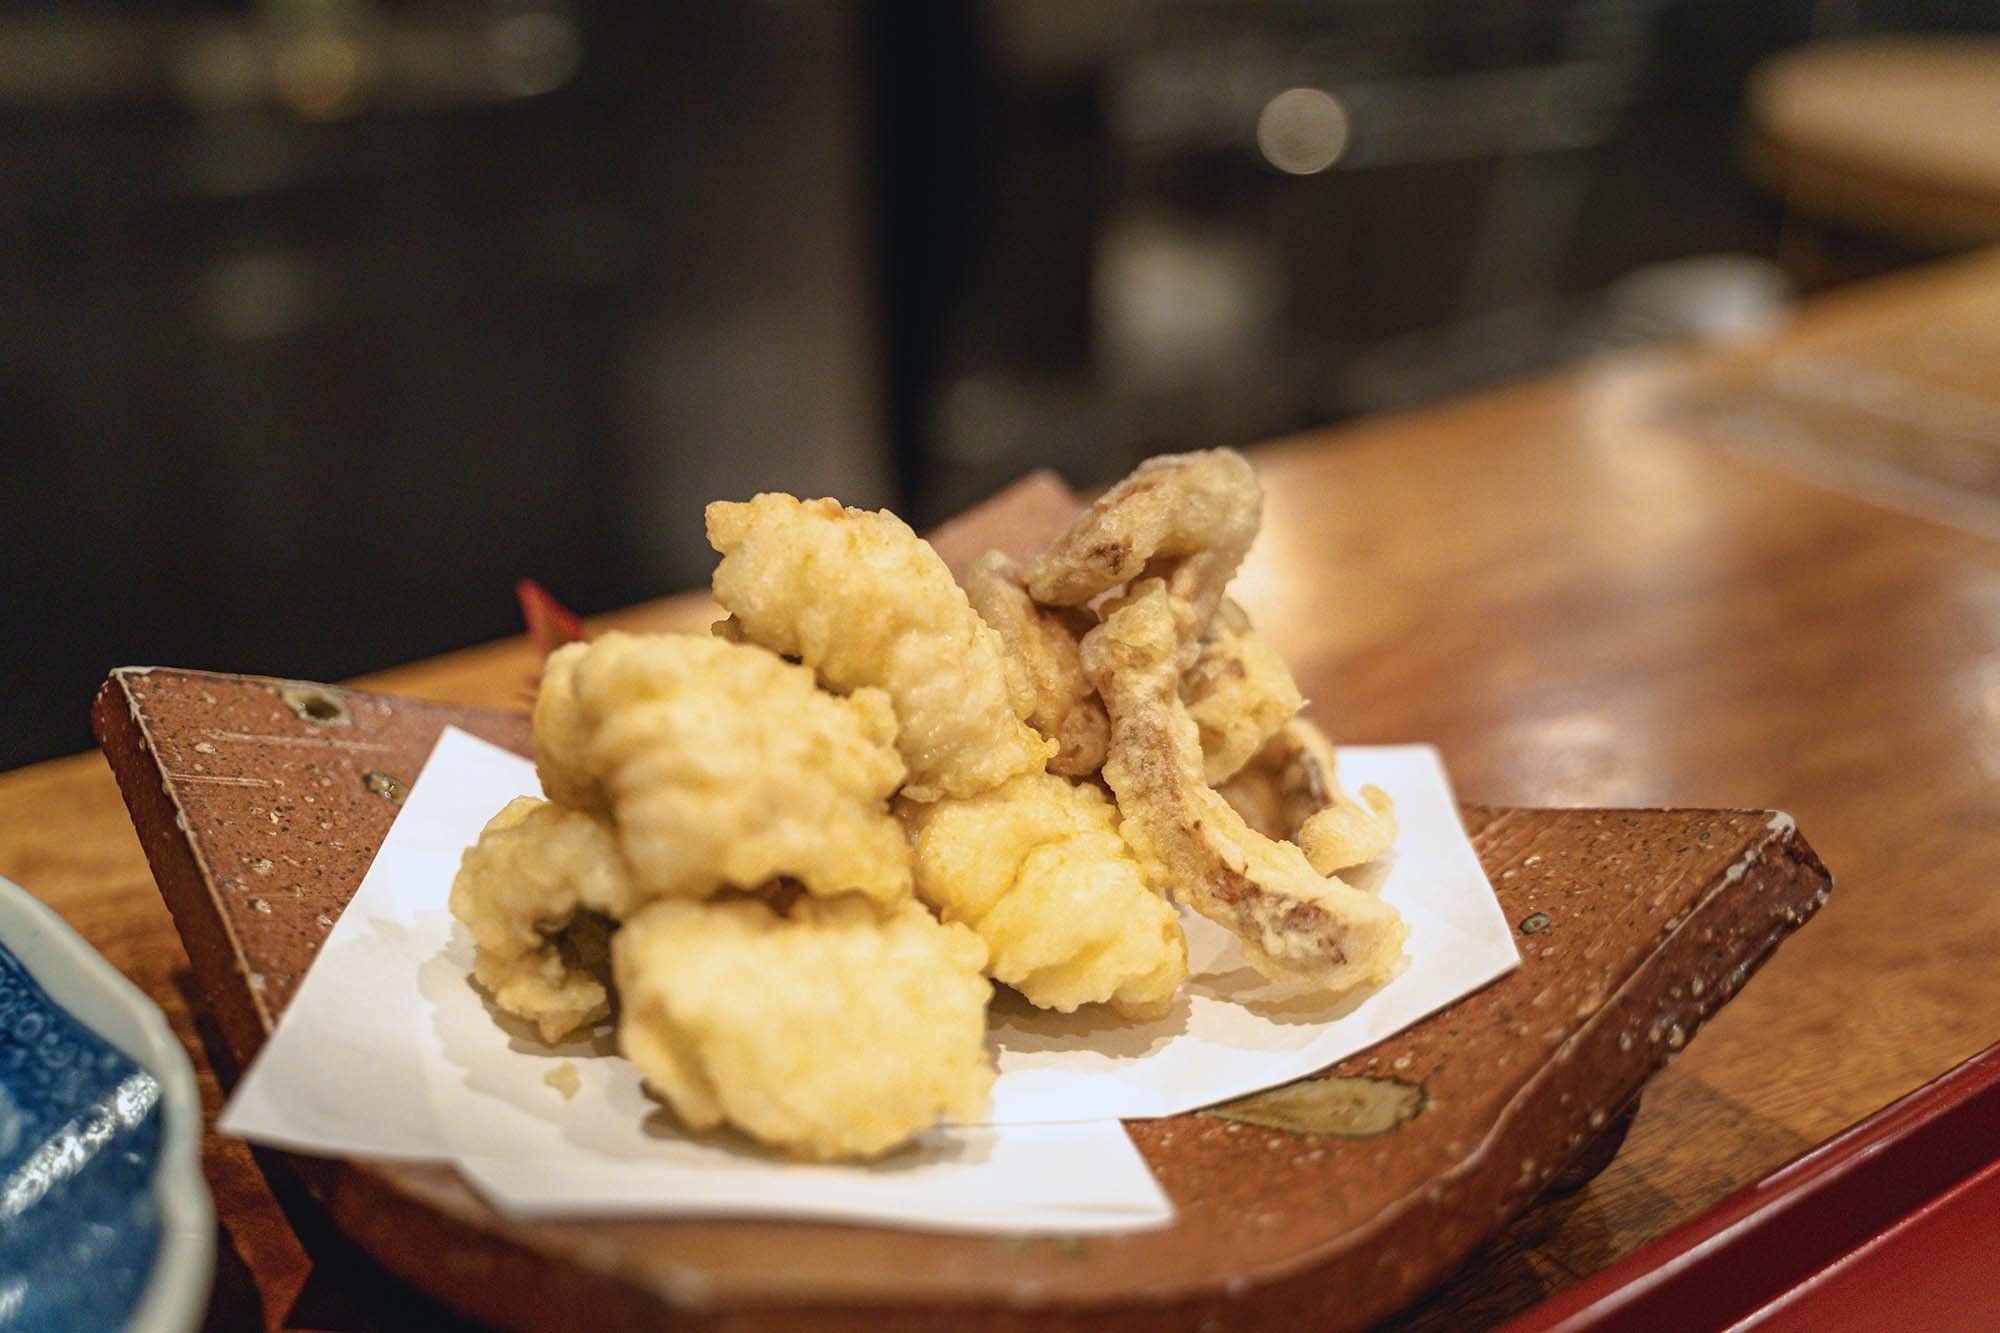 Anago (eel) tempura